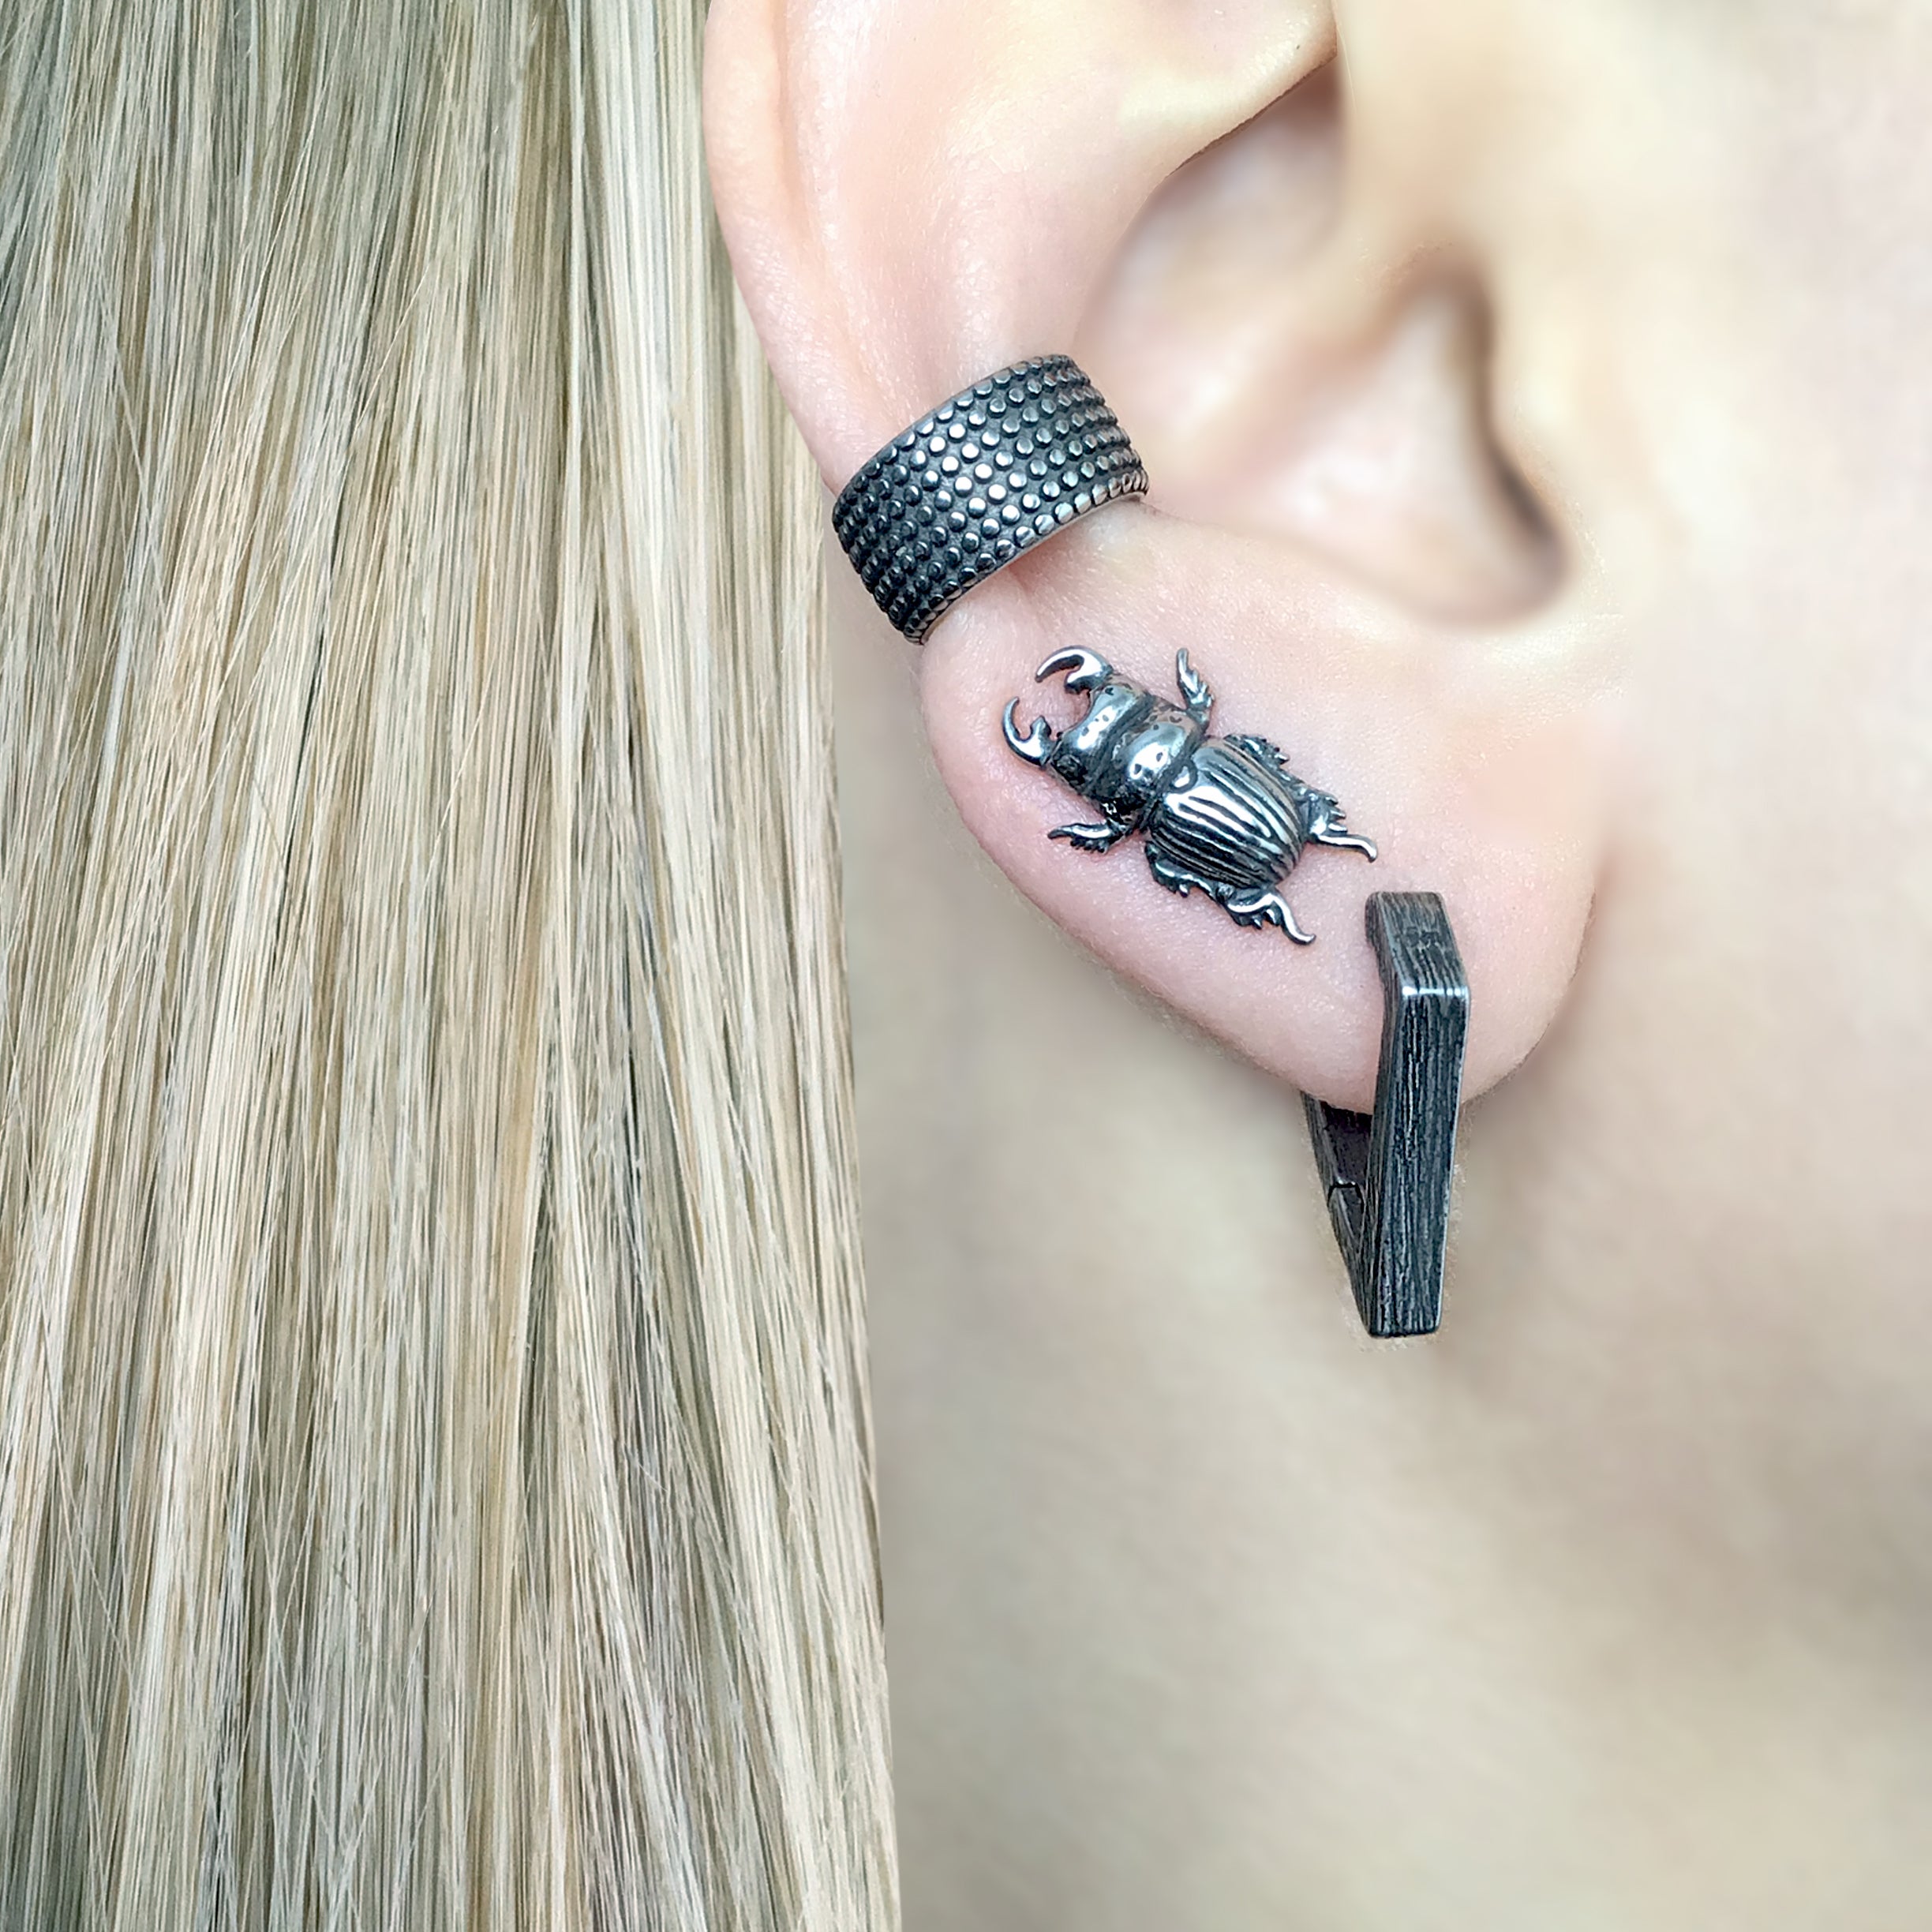 BEETLE STUD EARRINGS IN BLACK